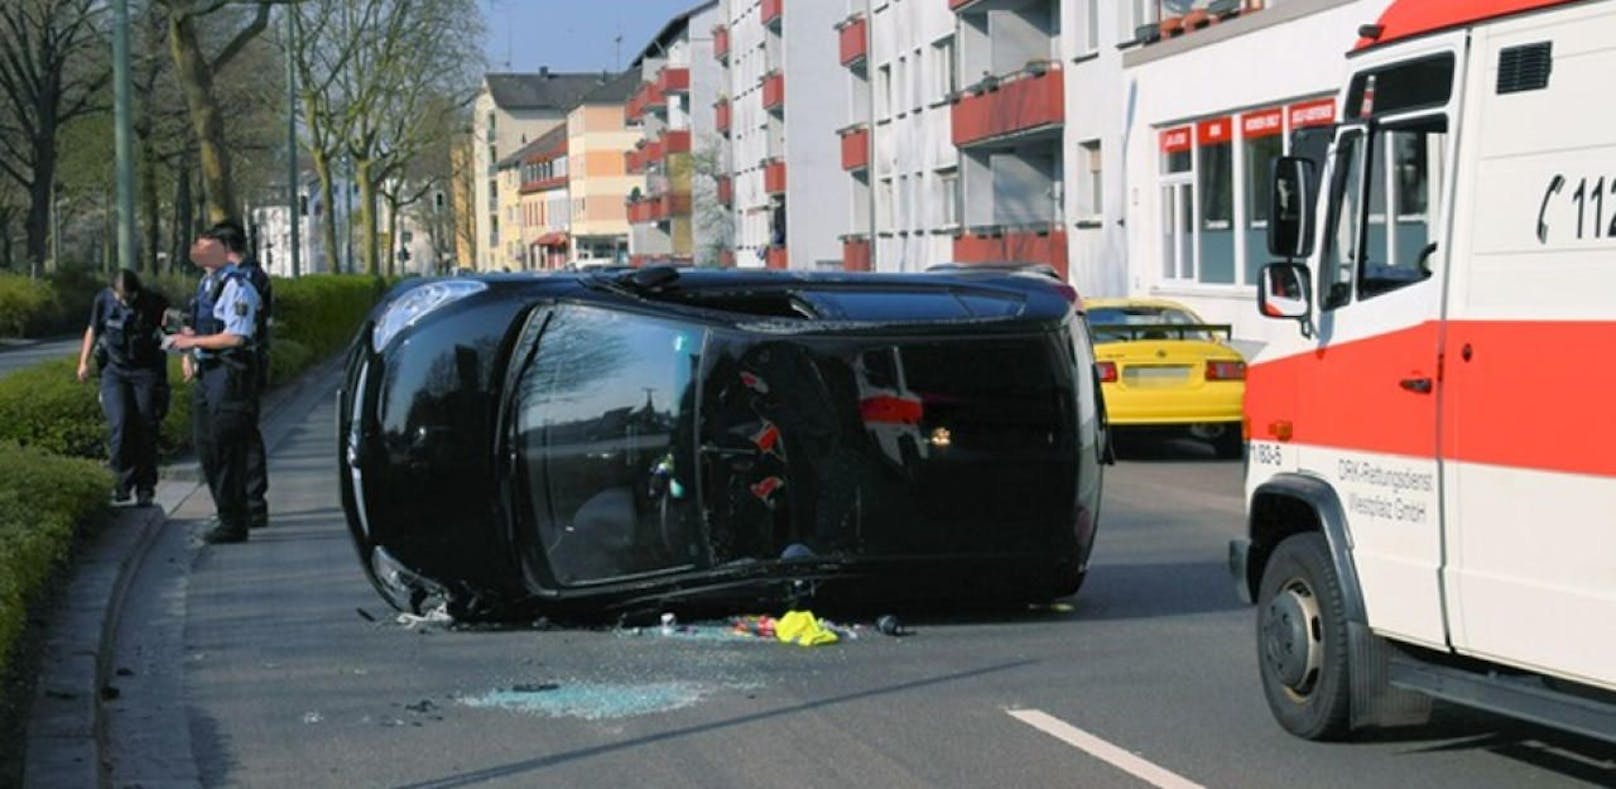 Die Spinne erschreckte die Fahrerin so sehr, dass sie mit ihrem Auto einen Unfall verursachte